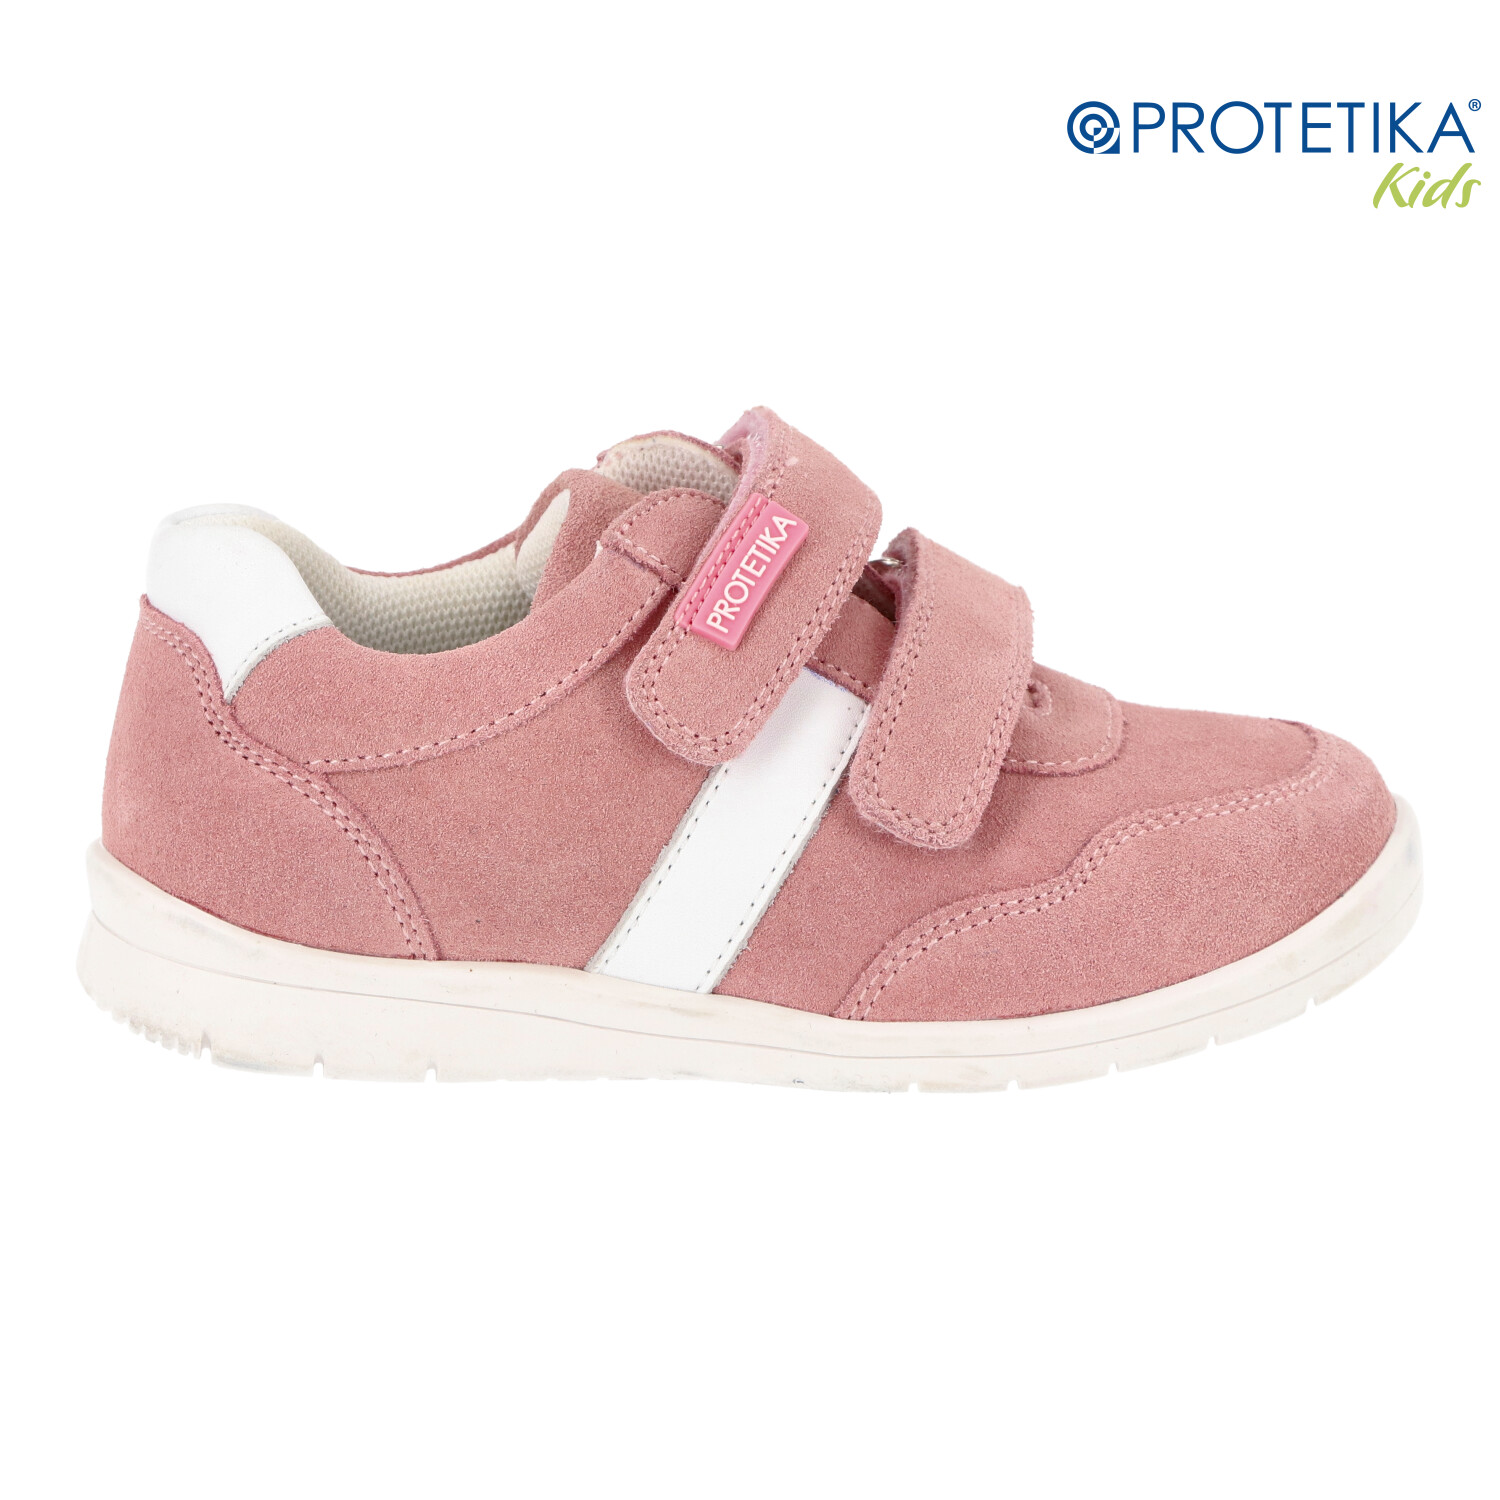 Protetika - topánky KALYPSO pink